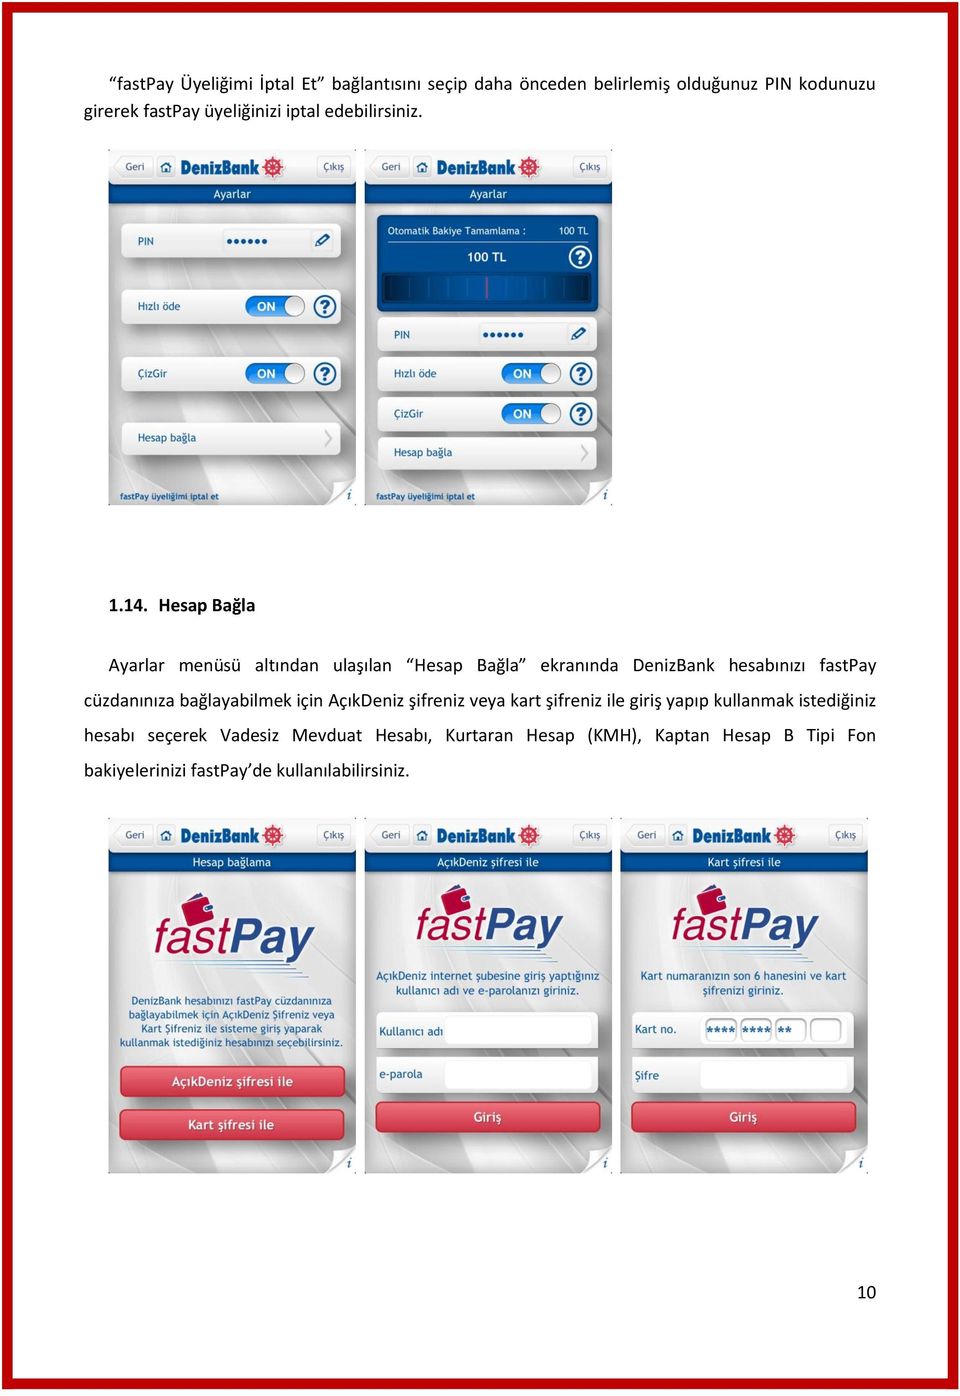 Hesap Bağla Ayarlar menüsü altından ulaşılan Hesap Bağla ekranında DenizBank hesabınızı fastpay cüzdanınıza bağlayabilmek